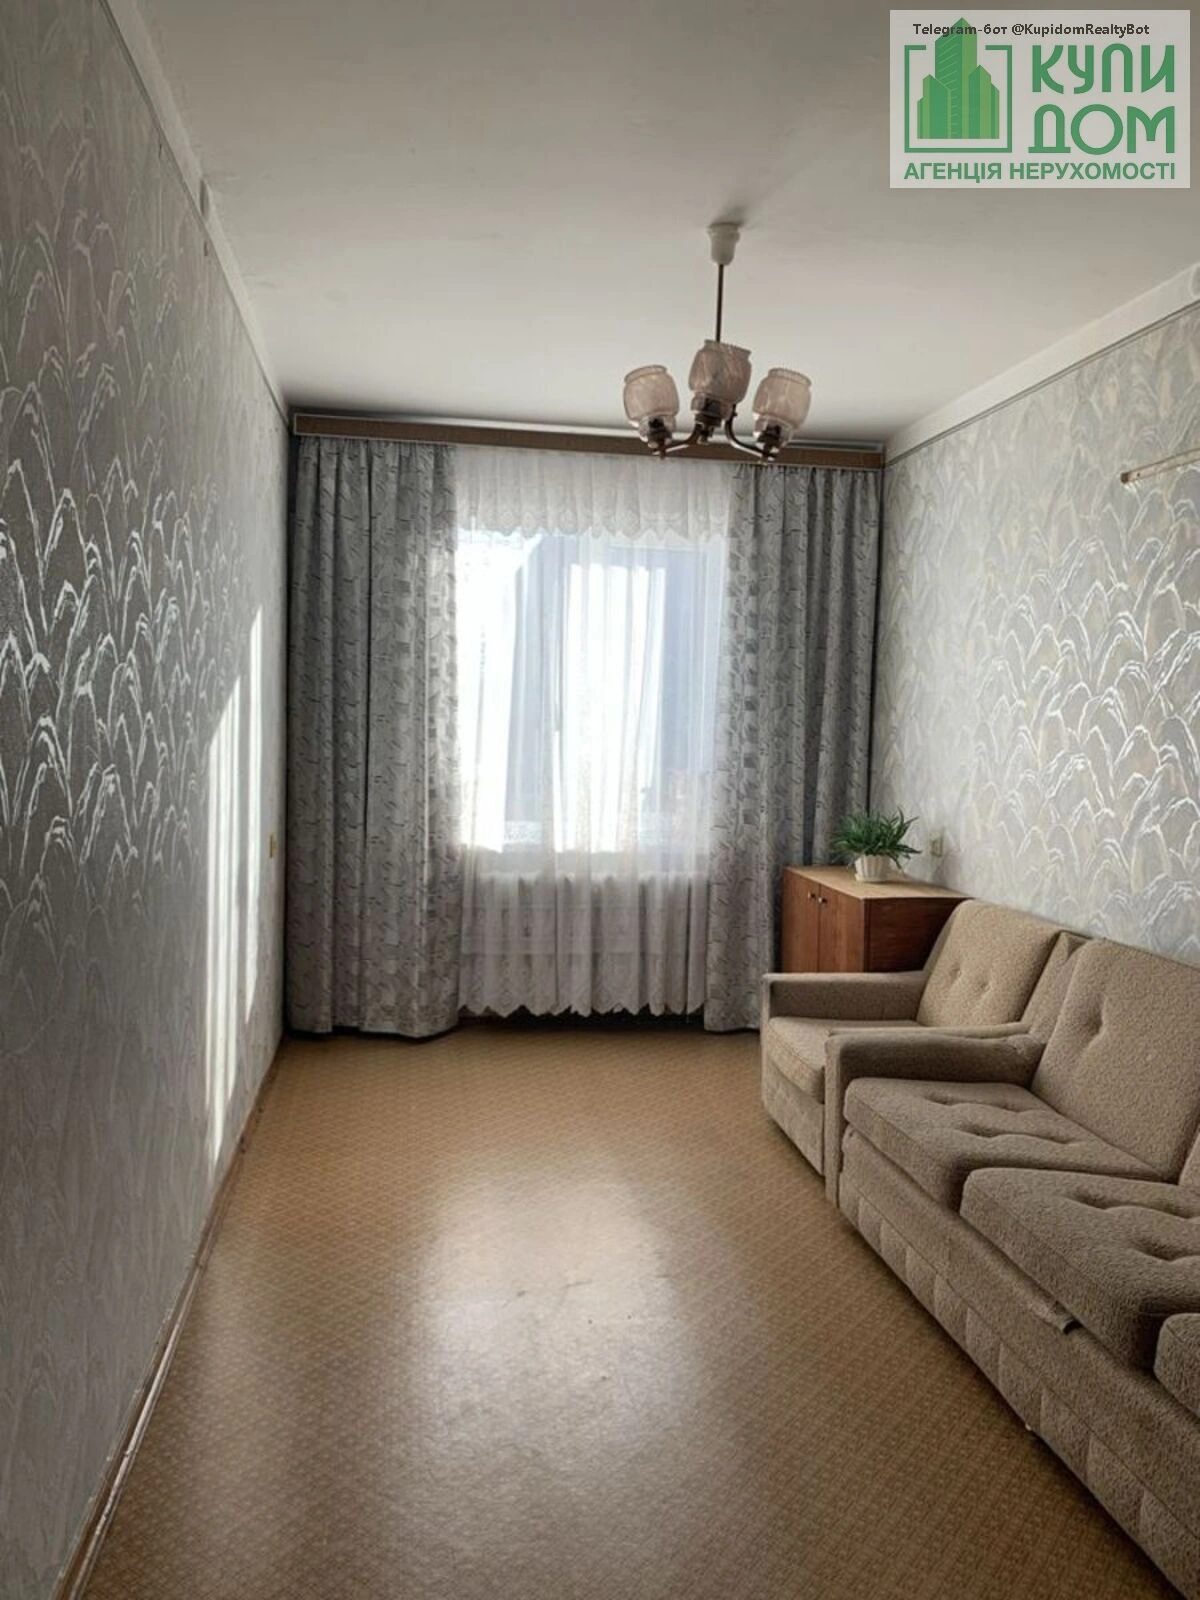 Двокімнатна квартира на Бєляєва